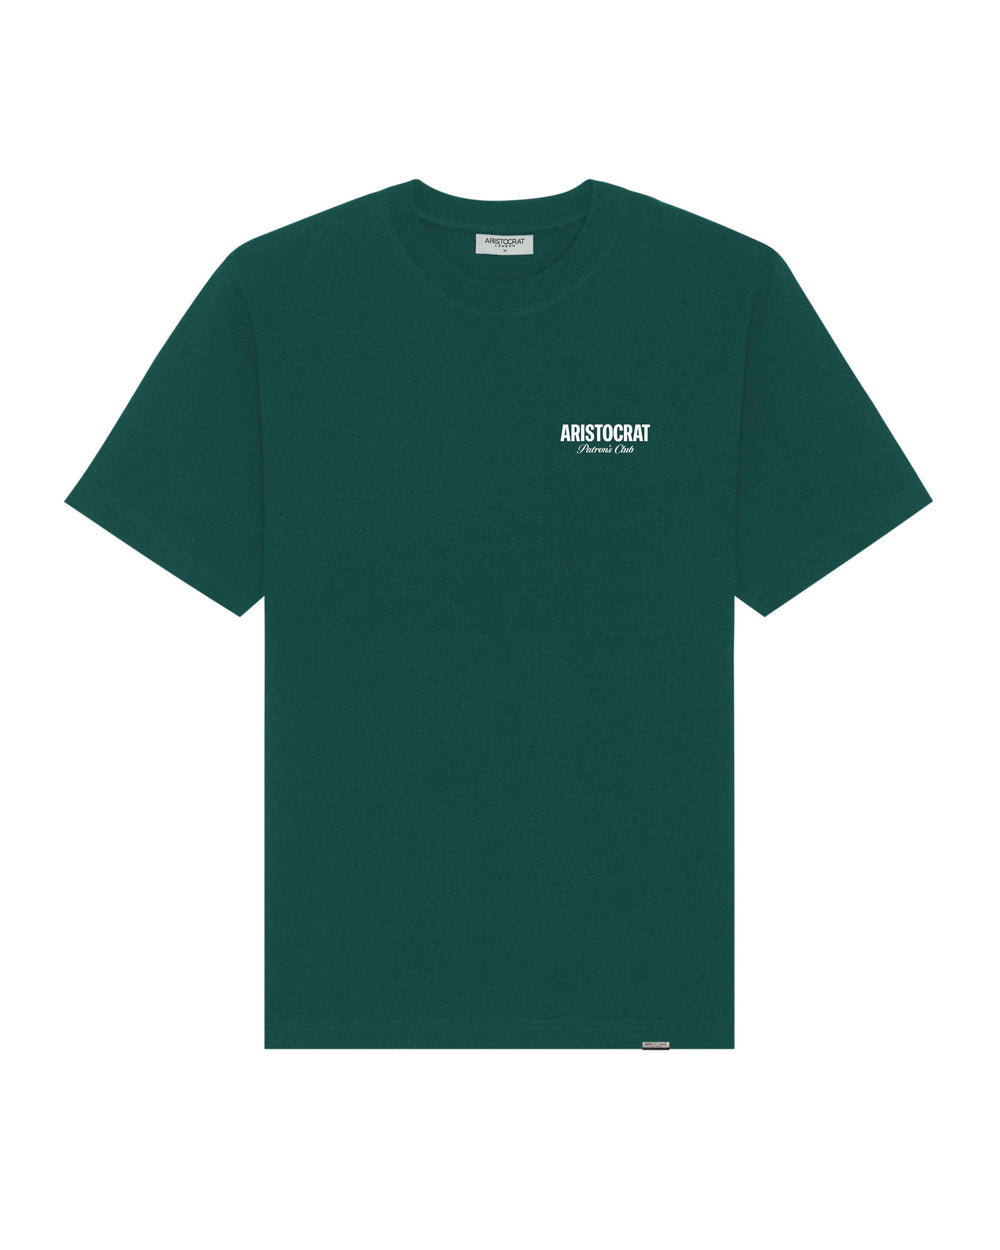 Patrons Club T-Shirt - Racing Green